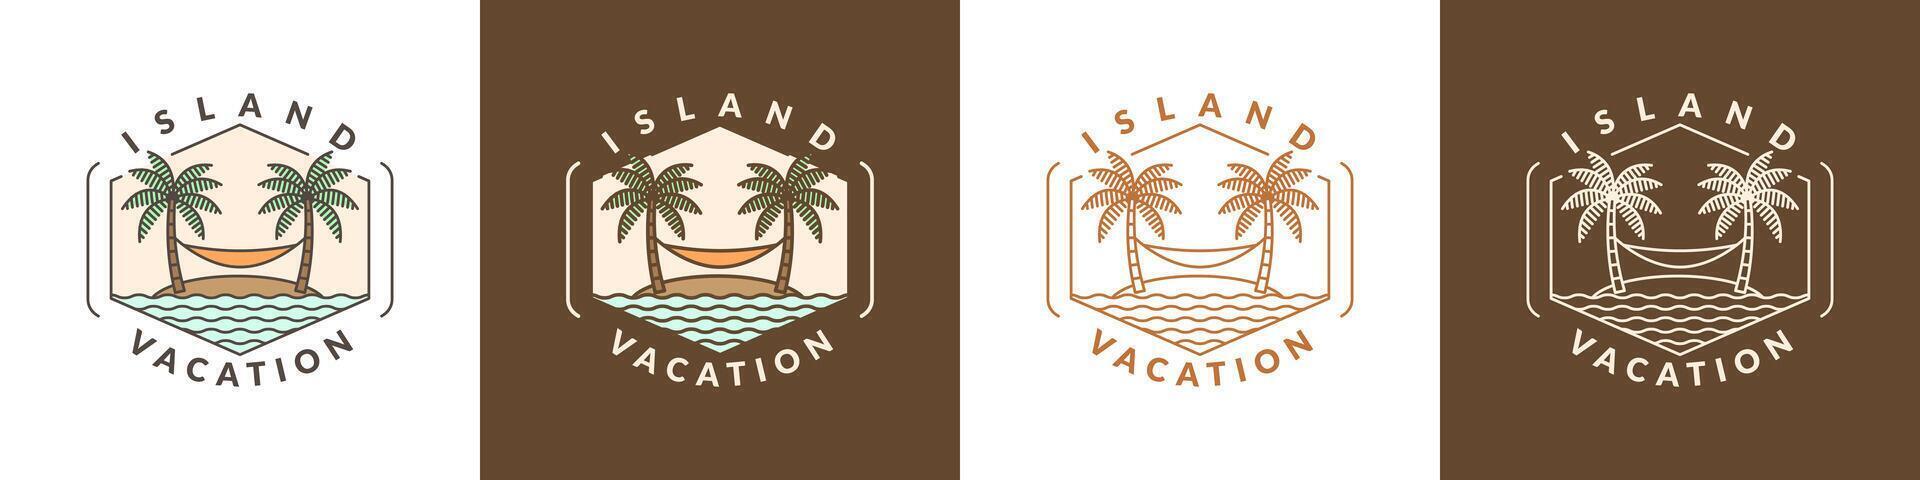 ilustração do ilha e maca monoline ou linha arte estilo vetor